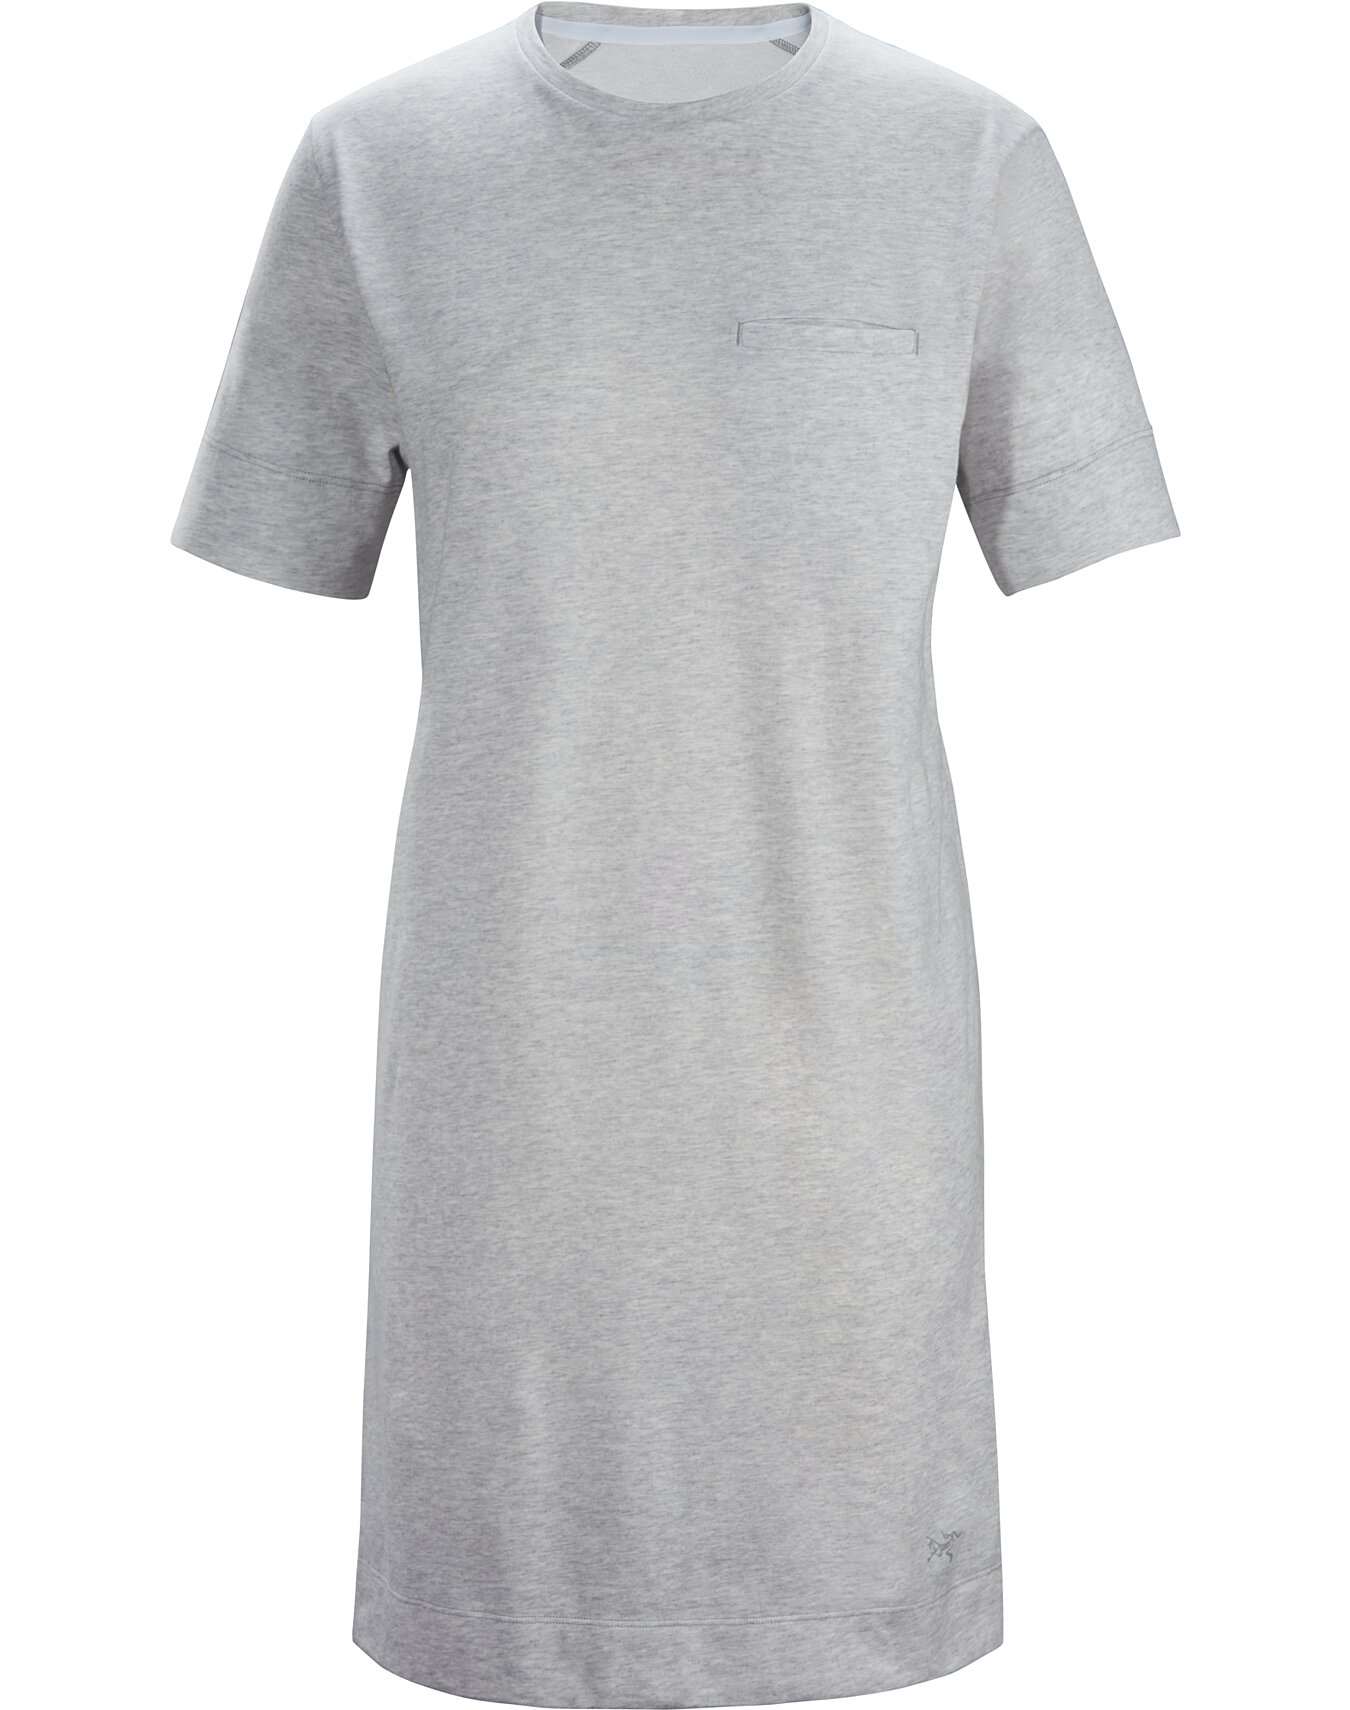 light grey t shirt dress